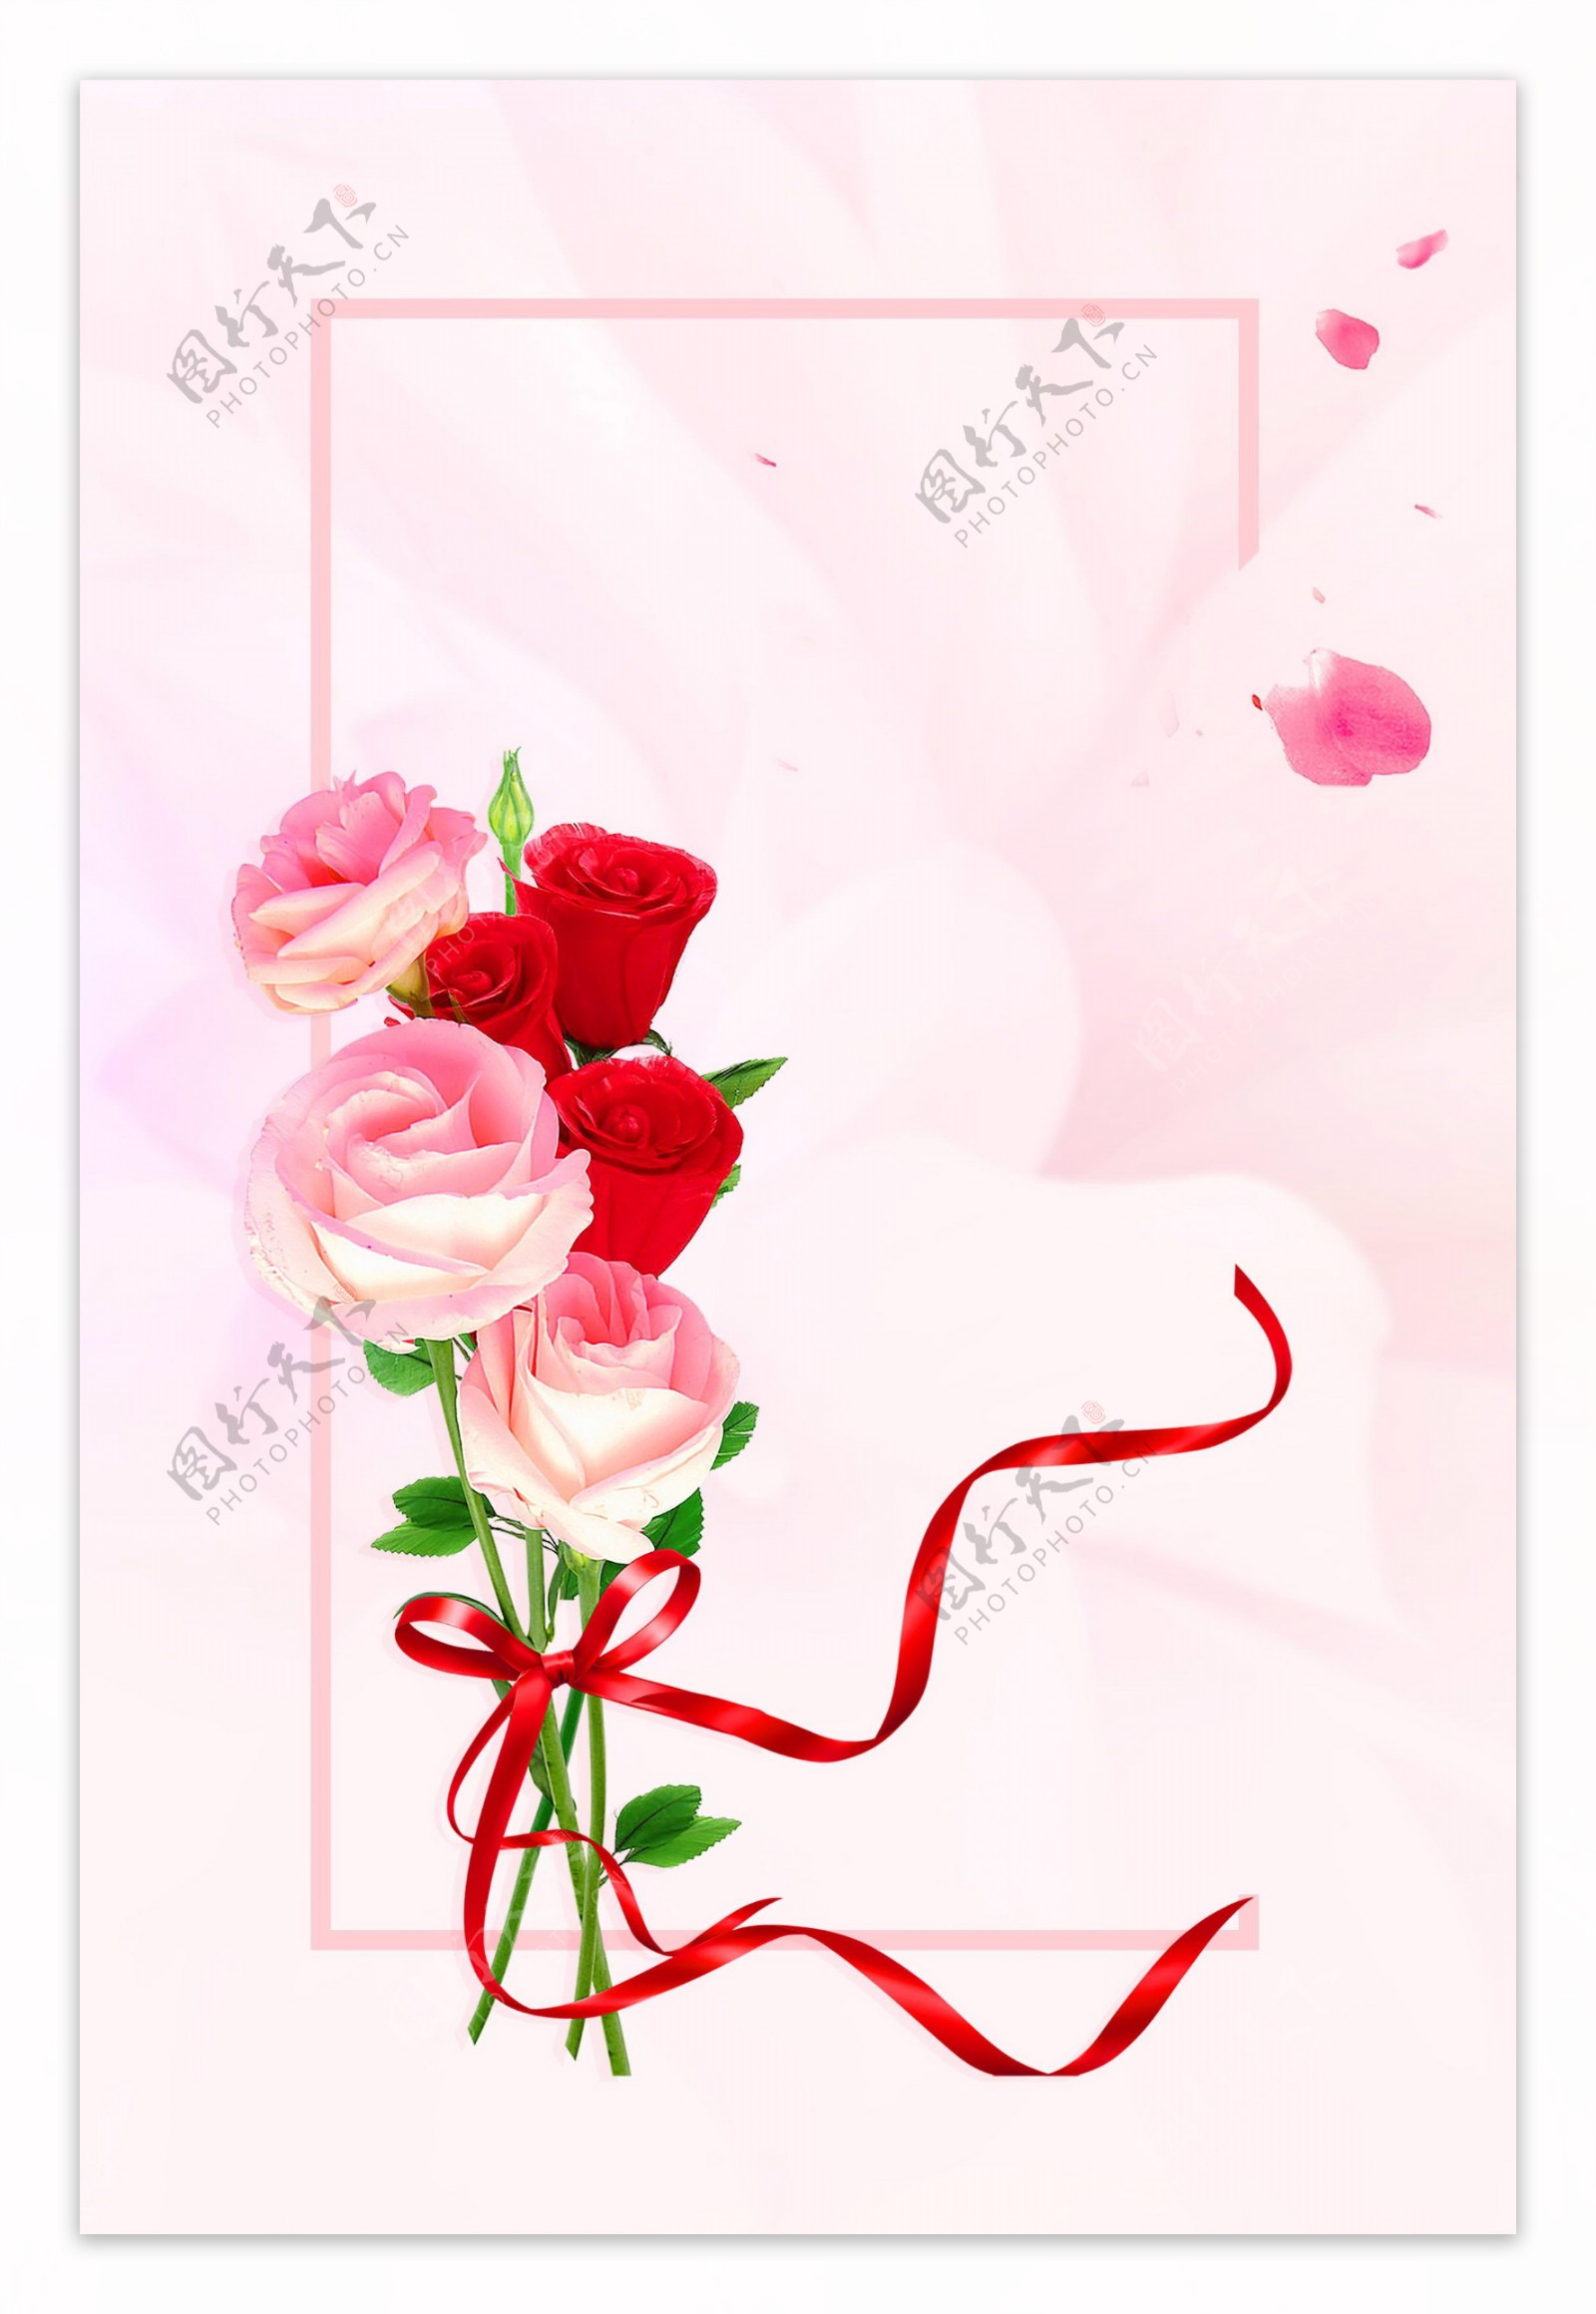 浪漫玫瑰花瓣背景